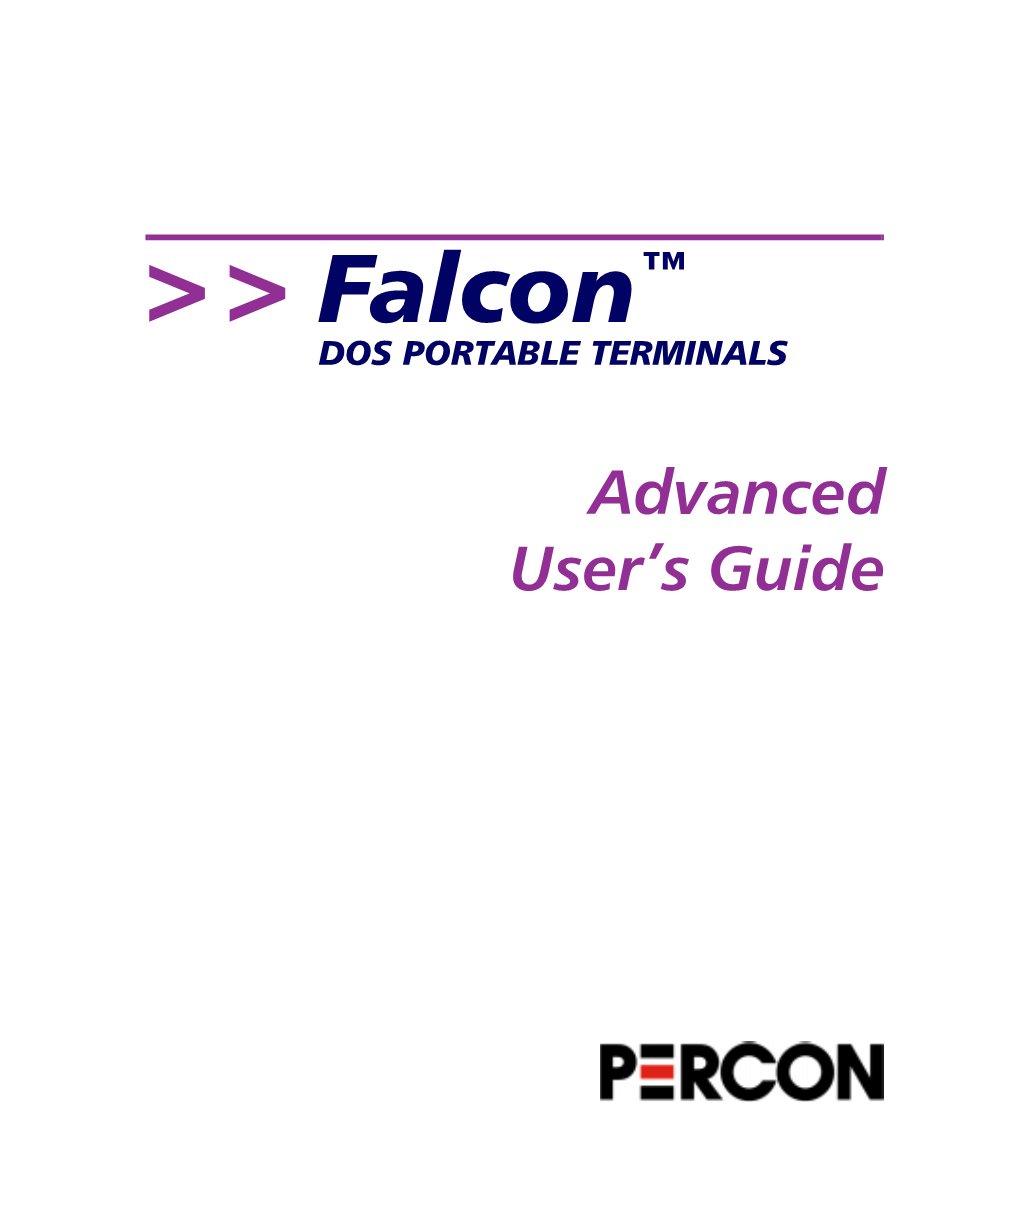 Falcon DOS Portable Terminals Advanced User's Guide